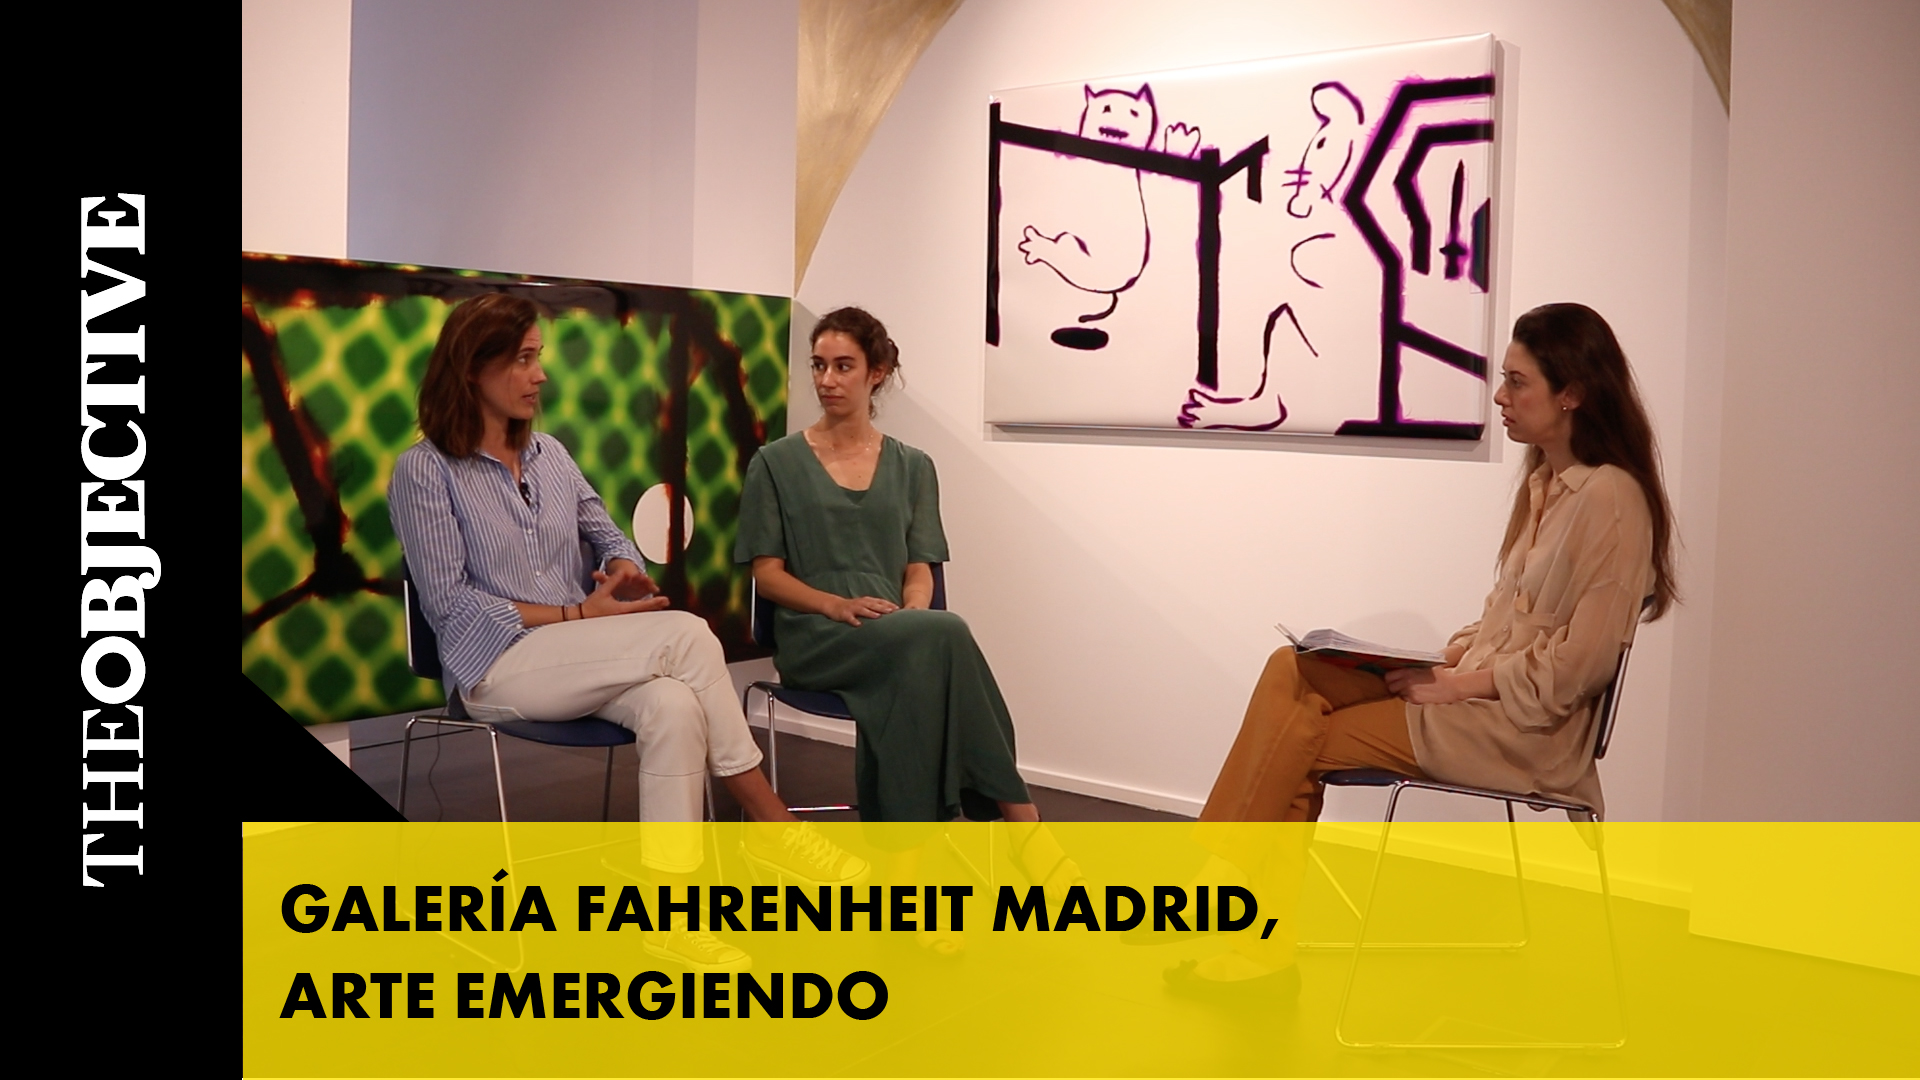 Galería Fahrenheit Madrid, arte emergiendo